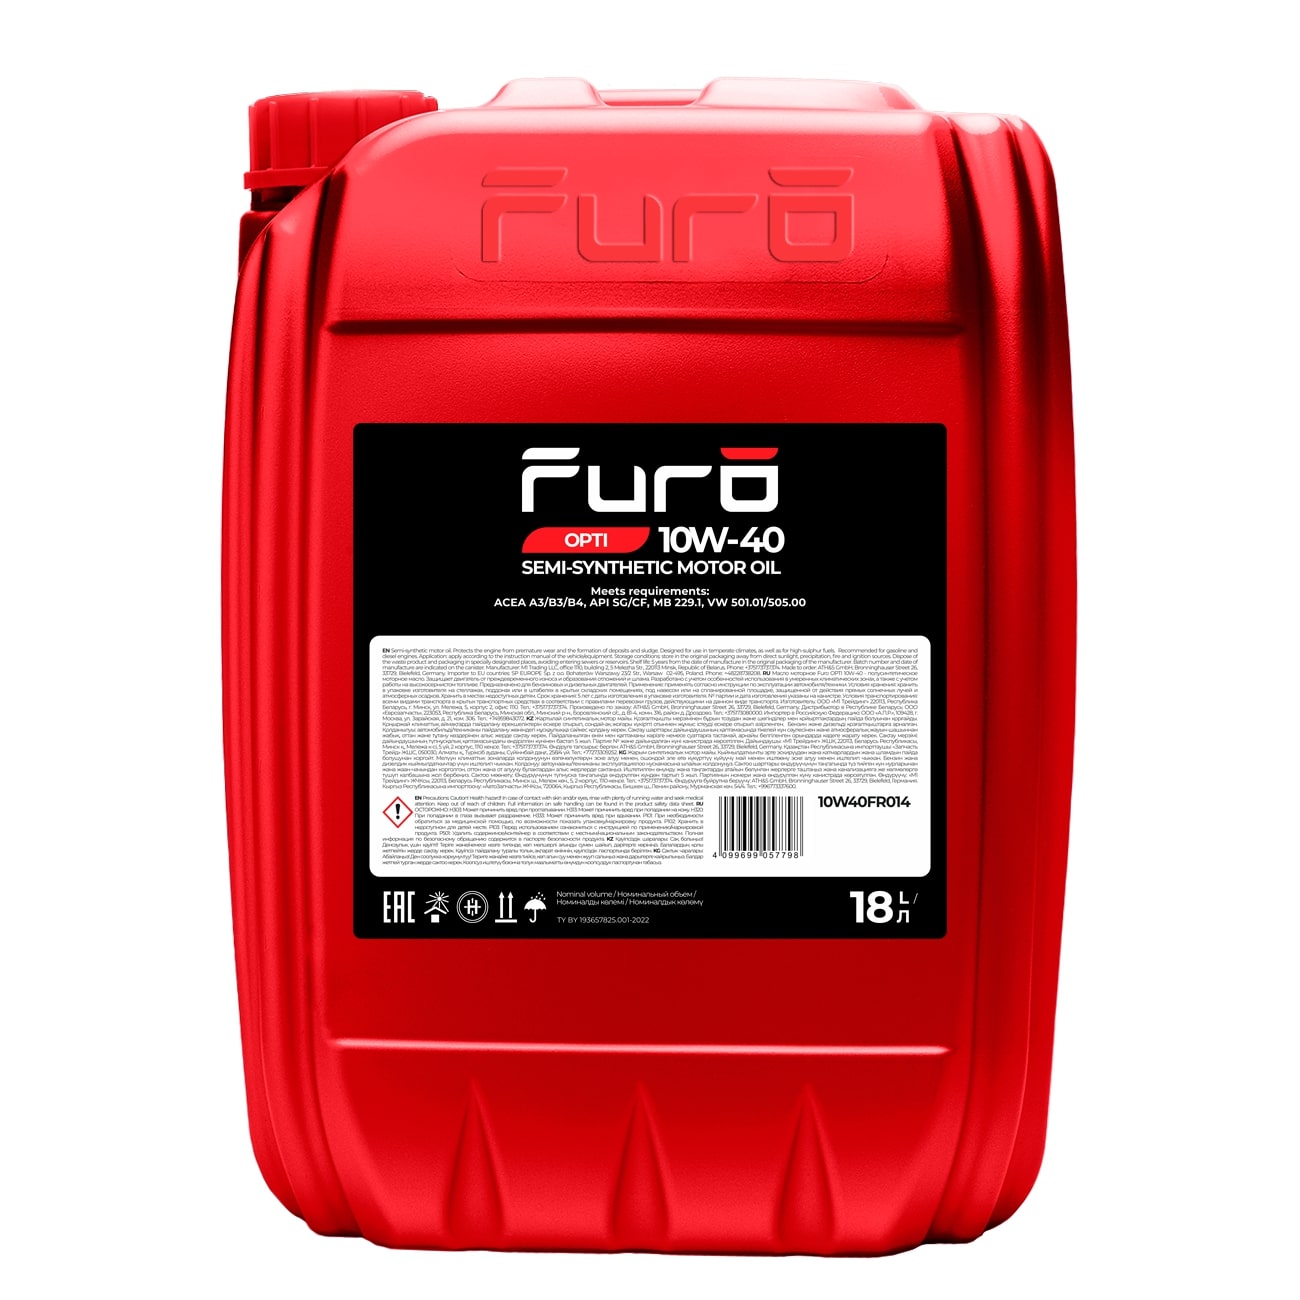 Масло моторное Furo OPTI 10W-40 18 л 10W40FR014, Масла моторные